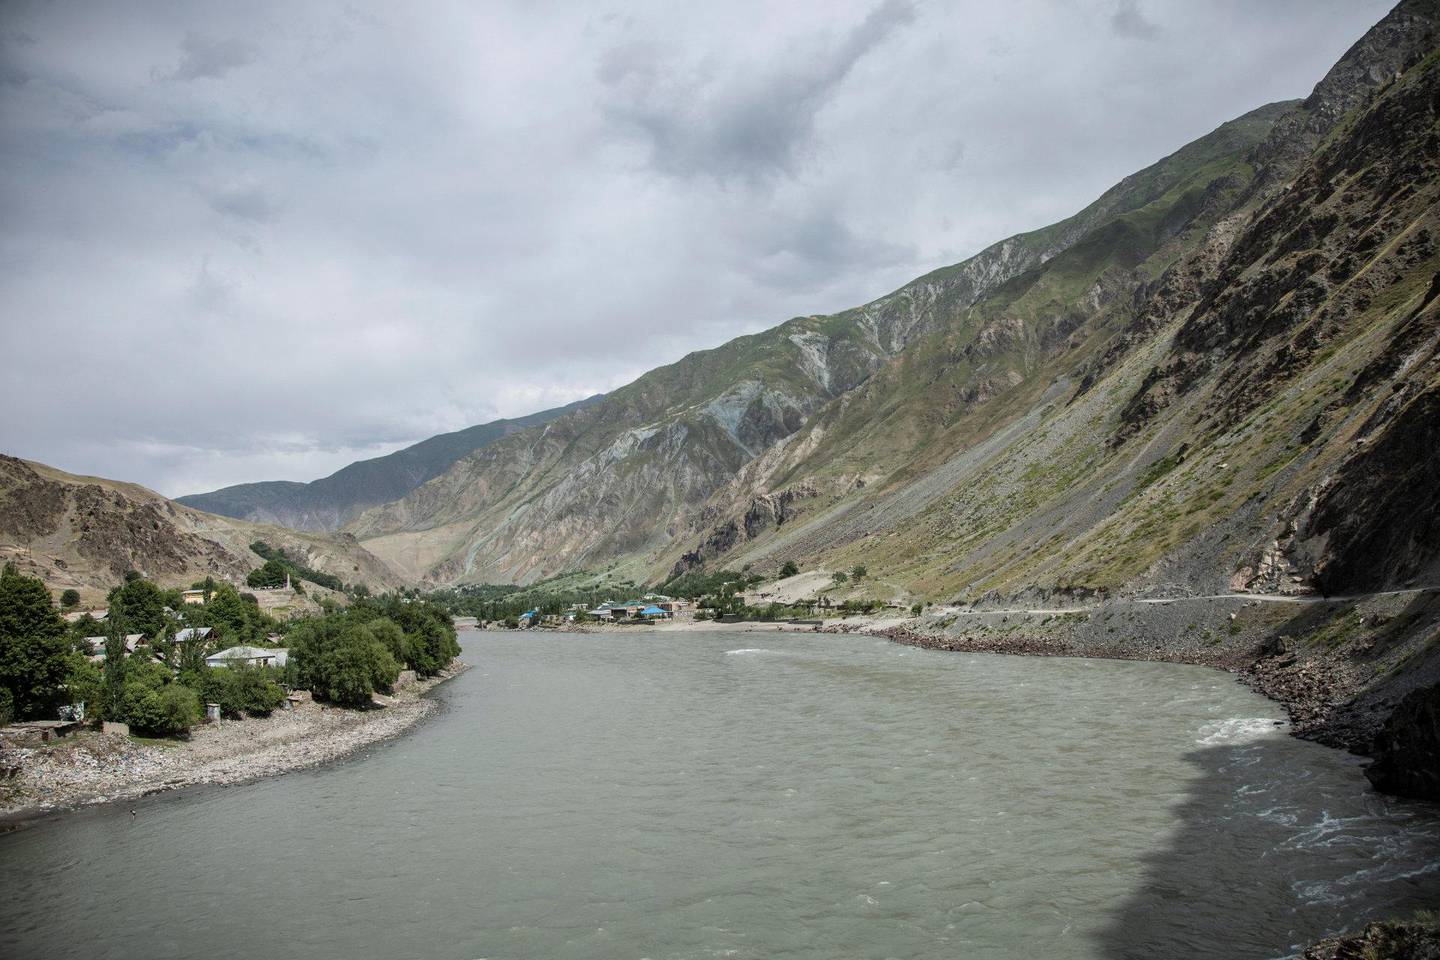 Om vinteren fryser elven til is. Da hender det at innbyggere fra den afghanske siden sniker seg over grensen, og tar mat fra den tadsjikiske landsbyen.